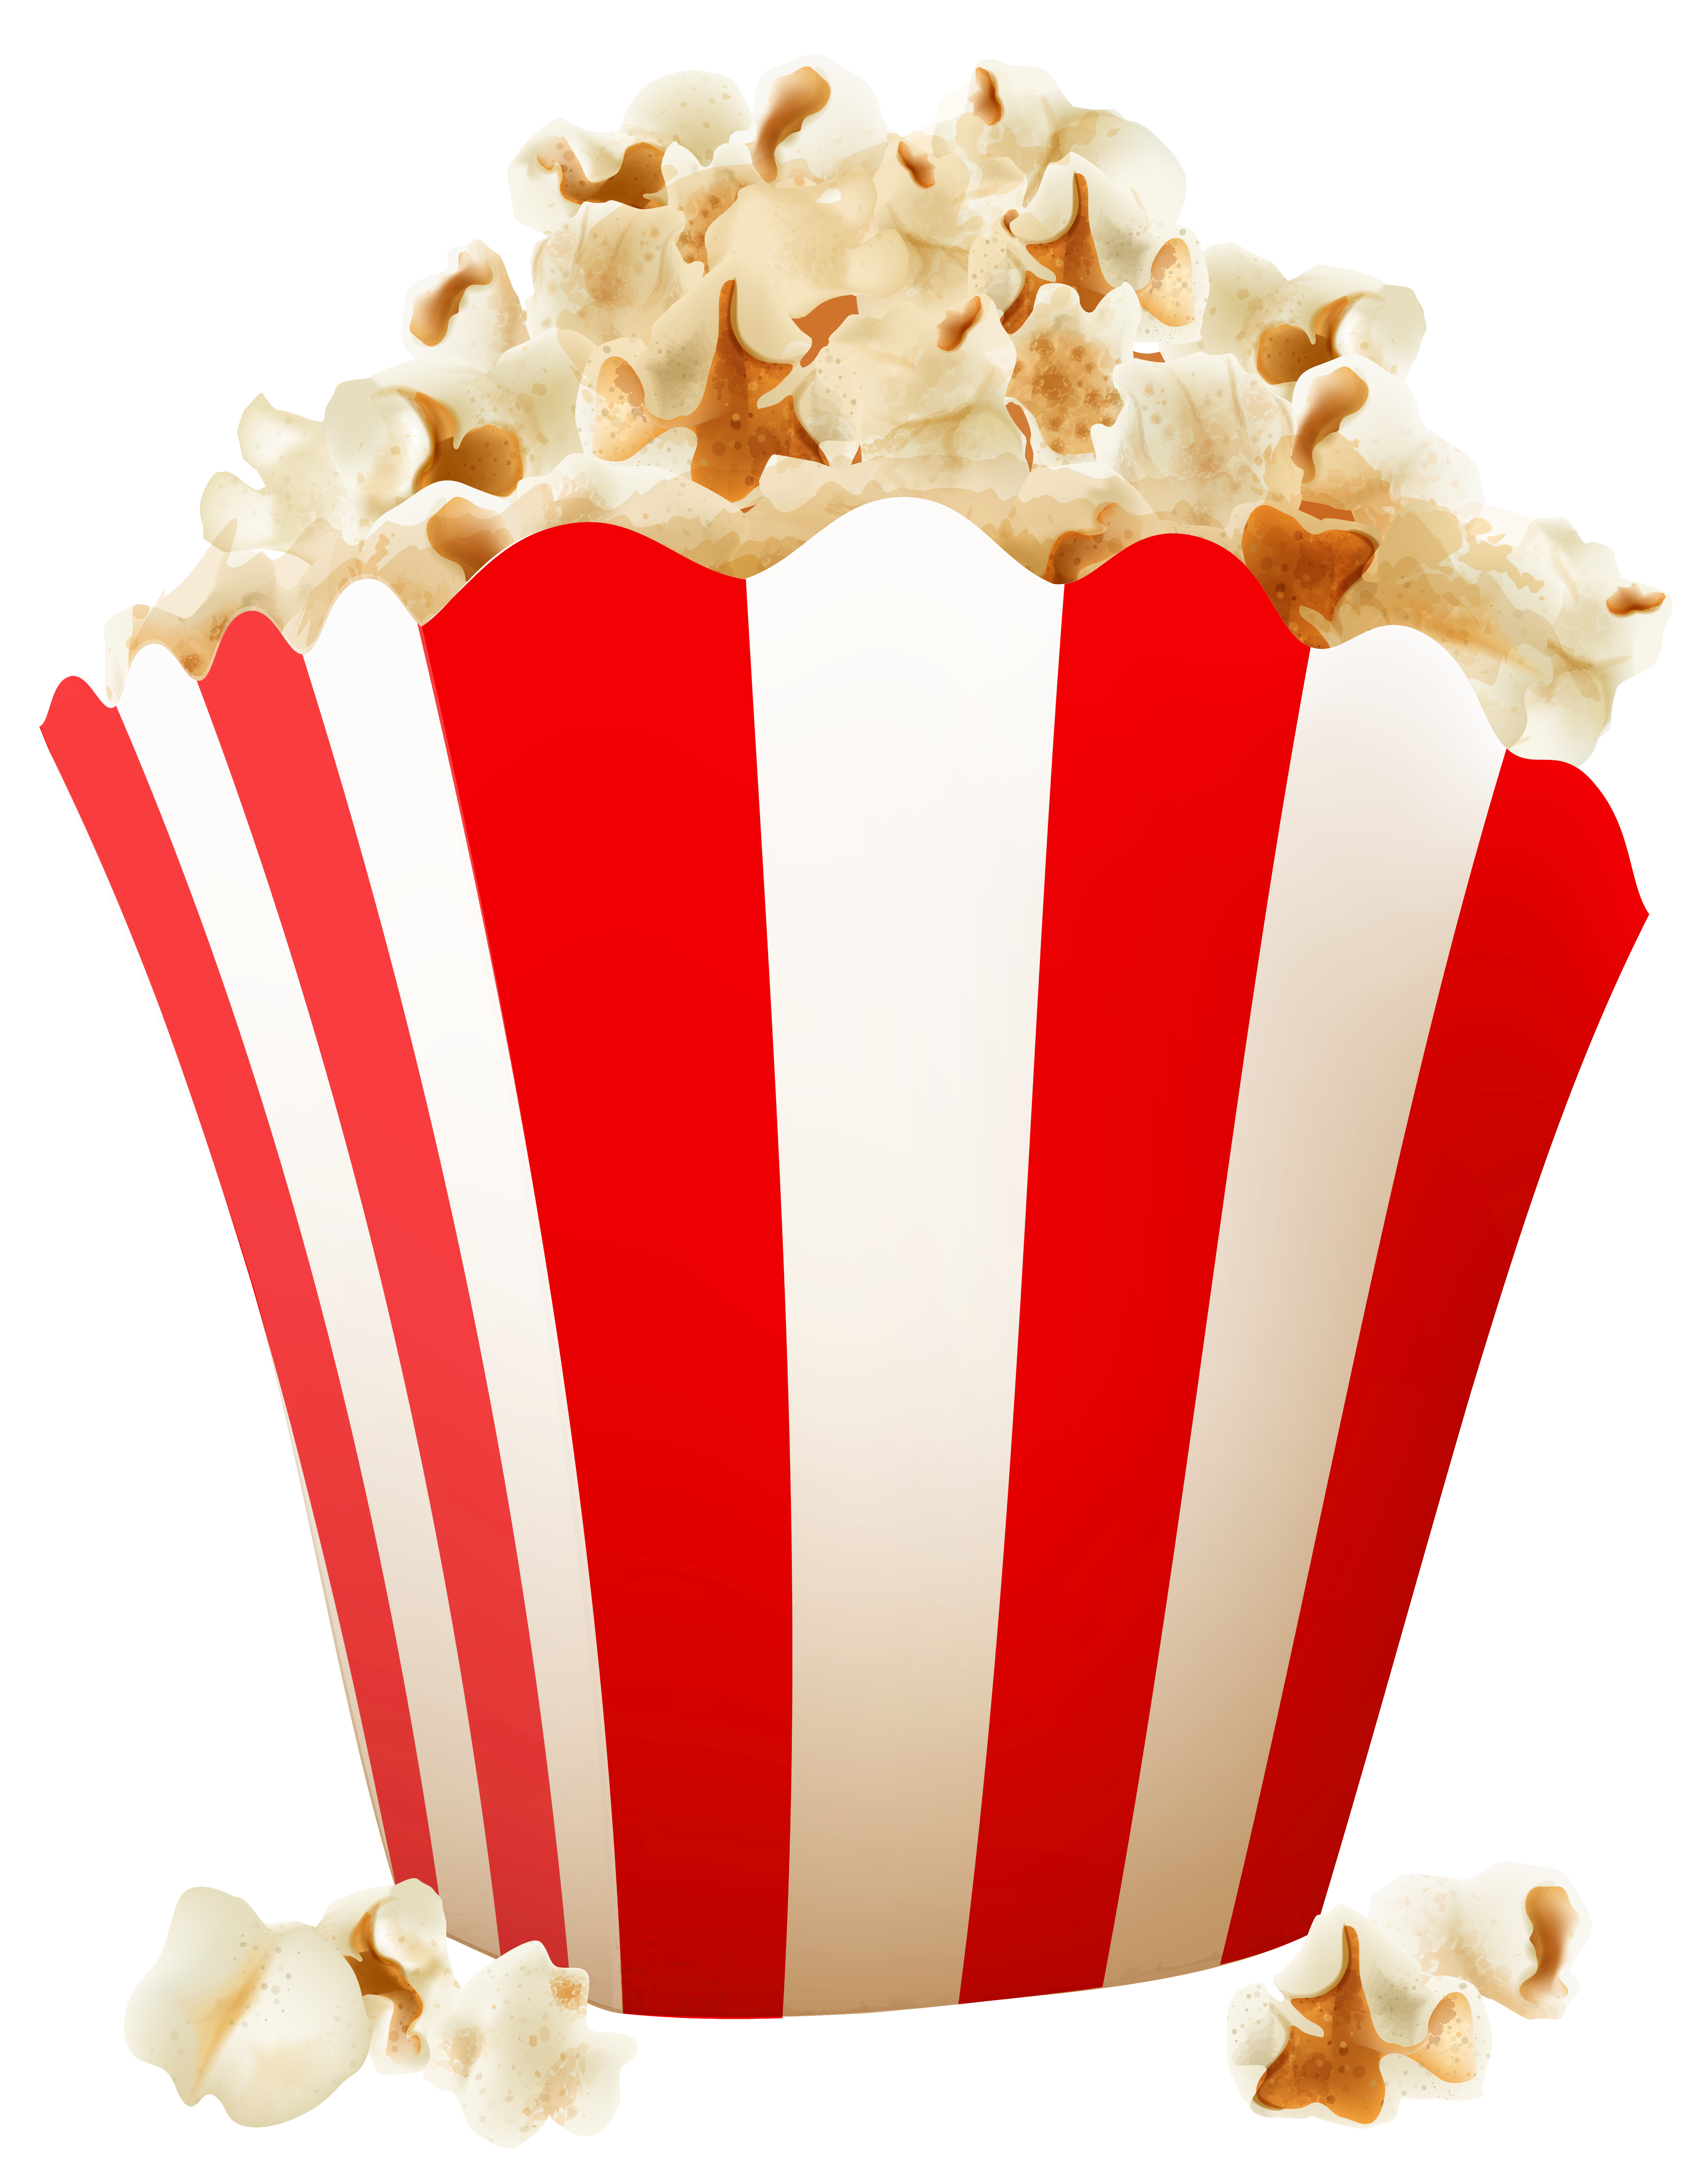 Image result for popcorn